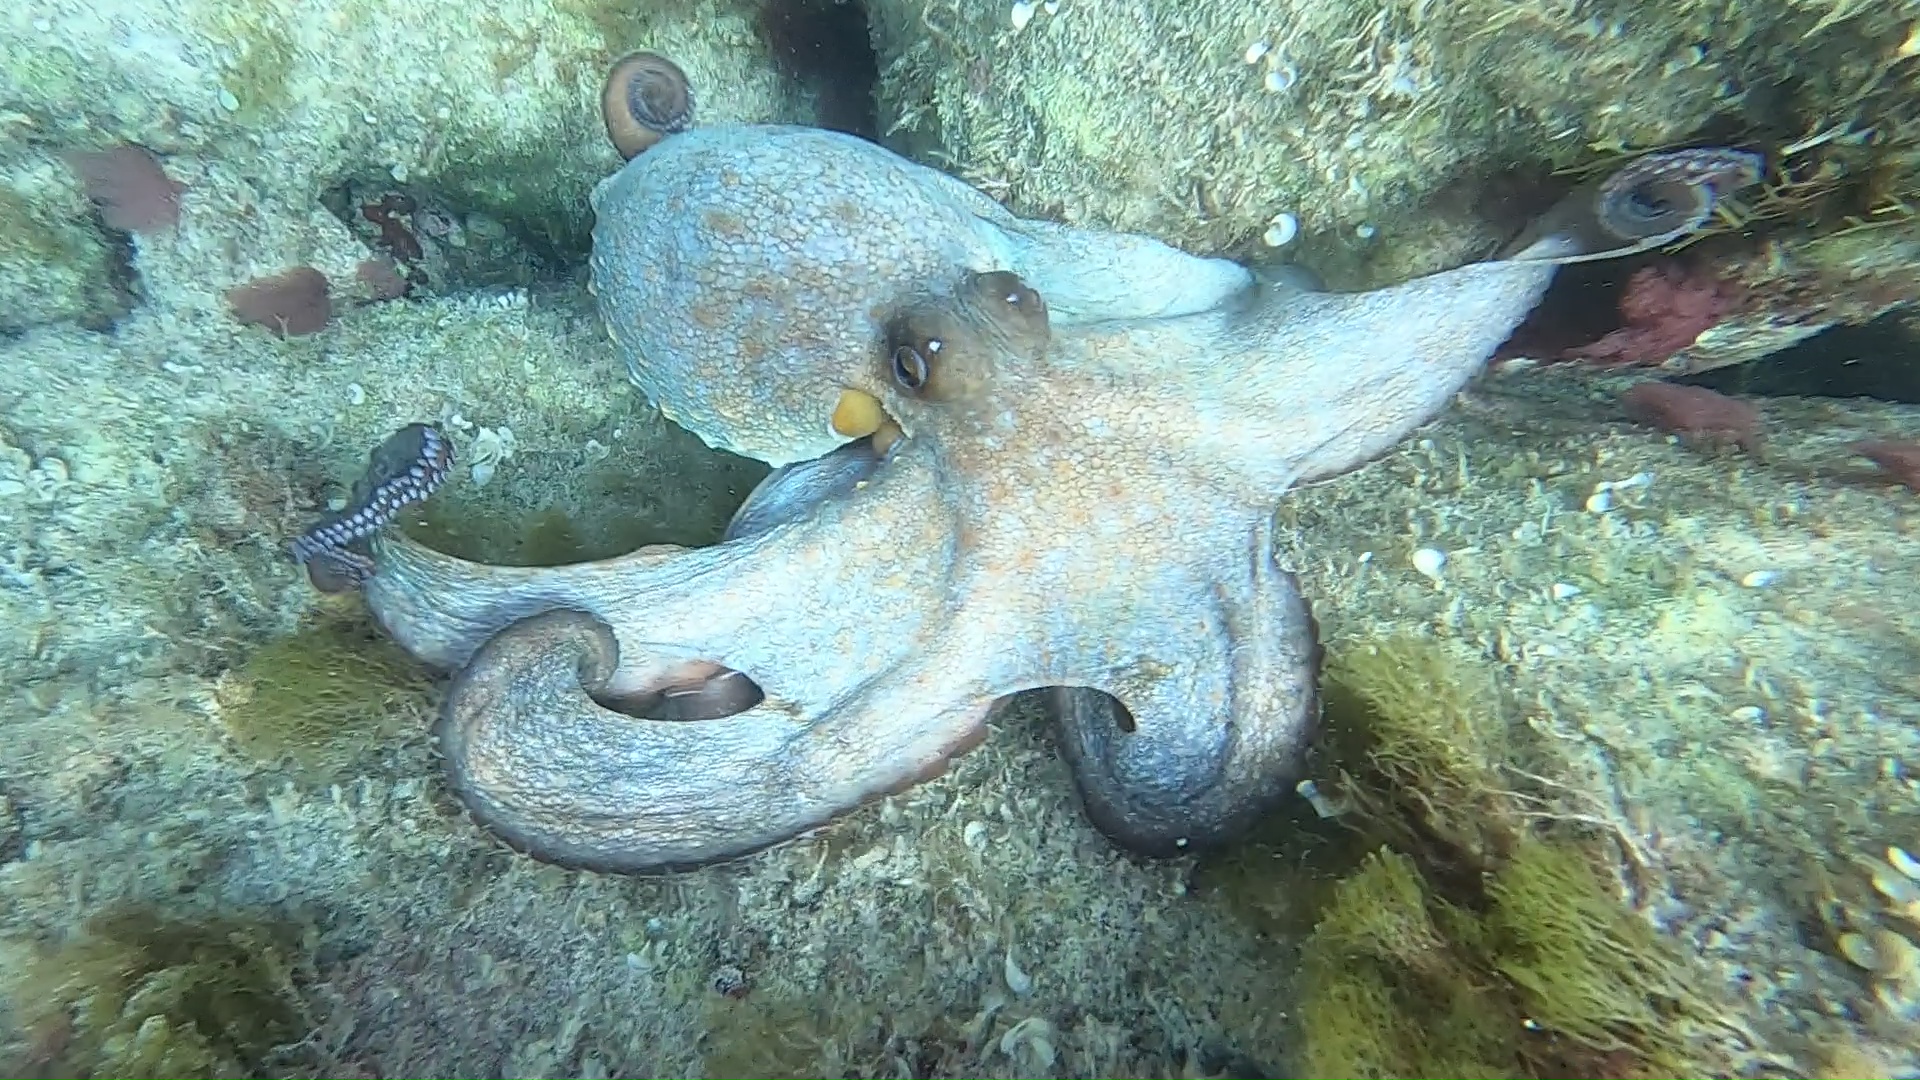 Octopus vulgaris Polpo intotheblue.it